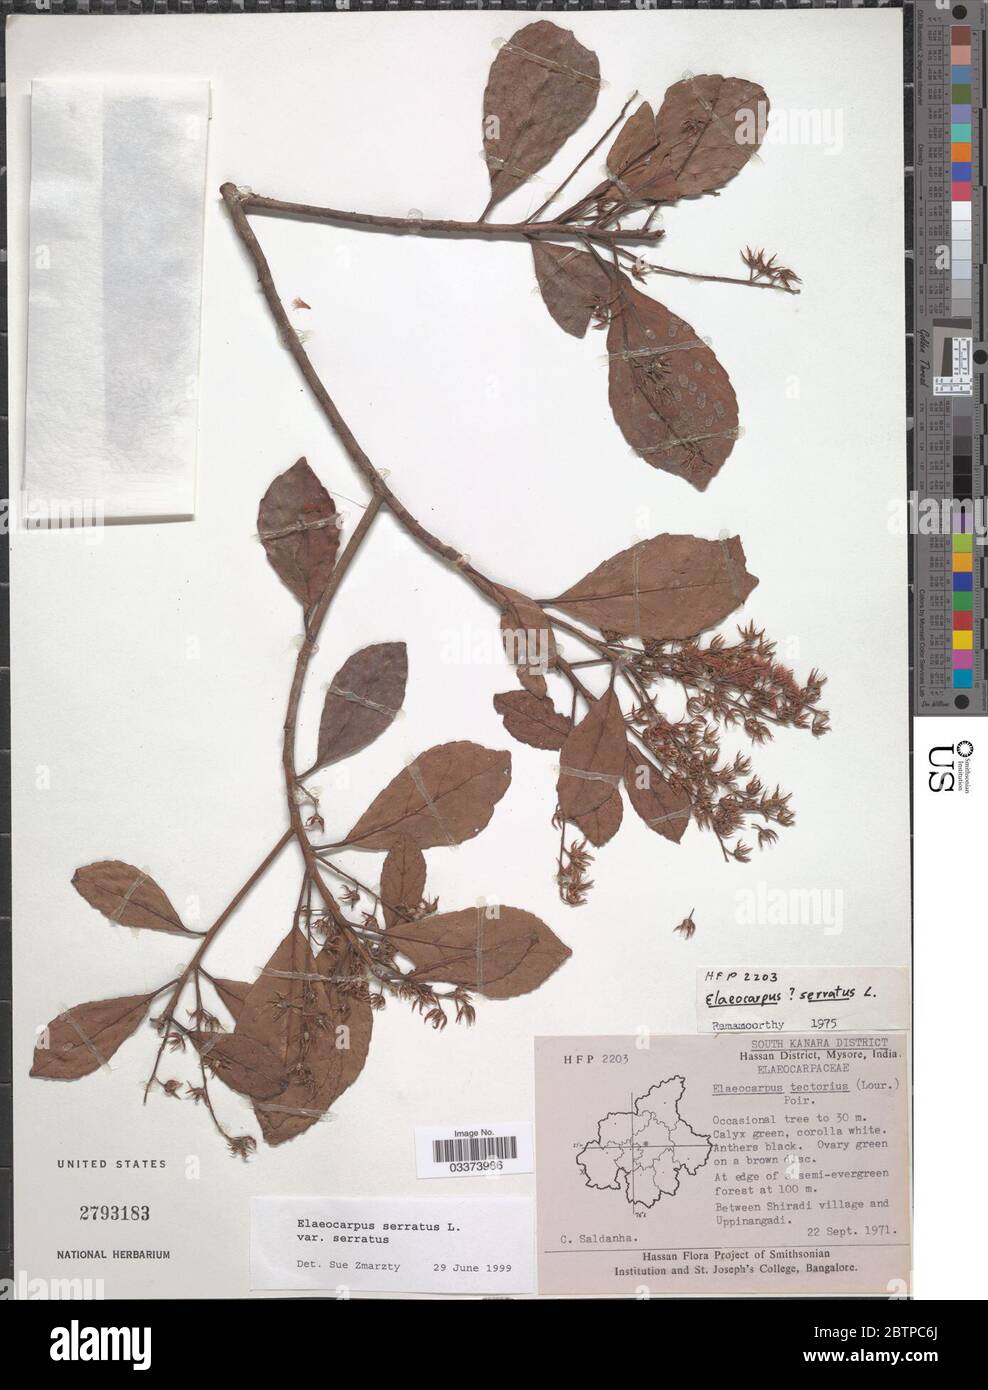 Elaeocarpus serratus var serratus. Stock Photo